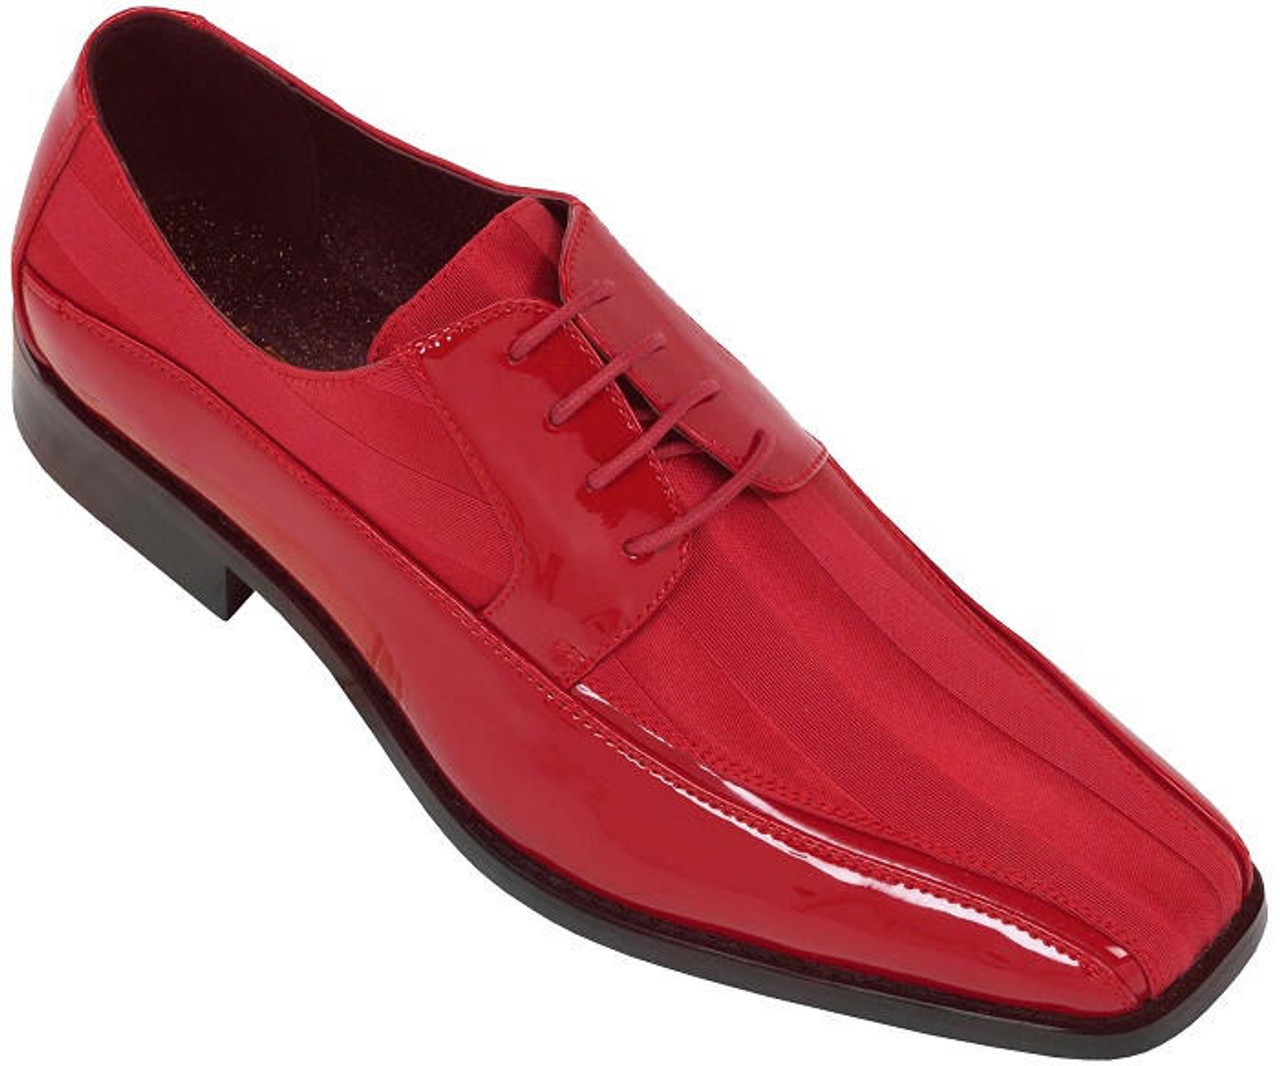 Красный туфли мужской. Красные туфли мужские. Красные лаковые туфли мужские. Красные ботинки мужские. Туфли мужские классические красные.